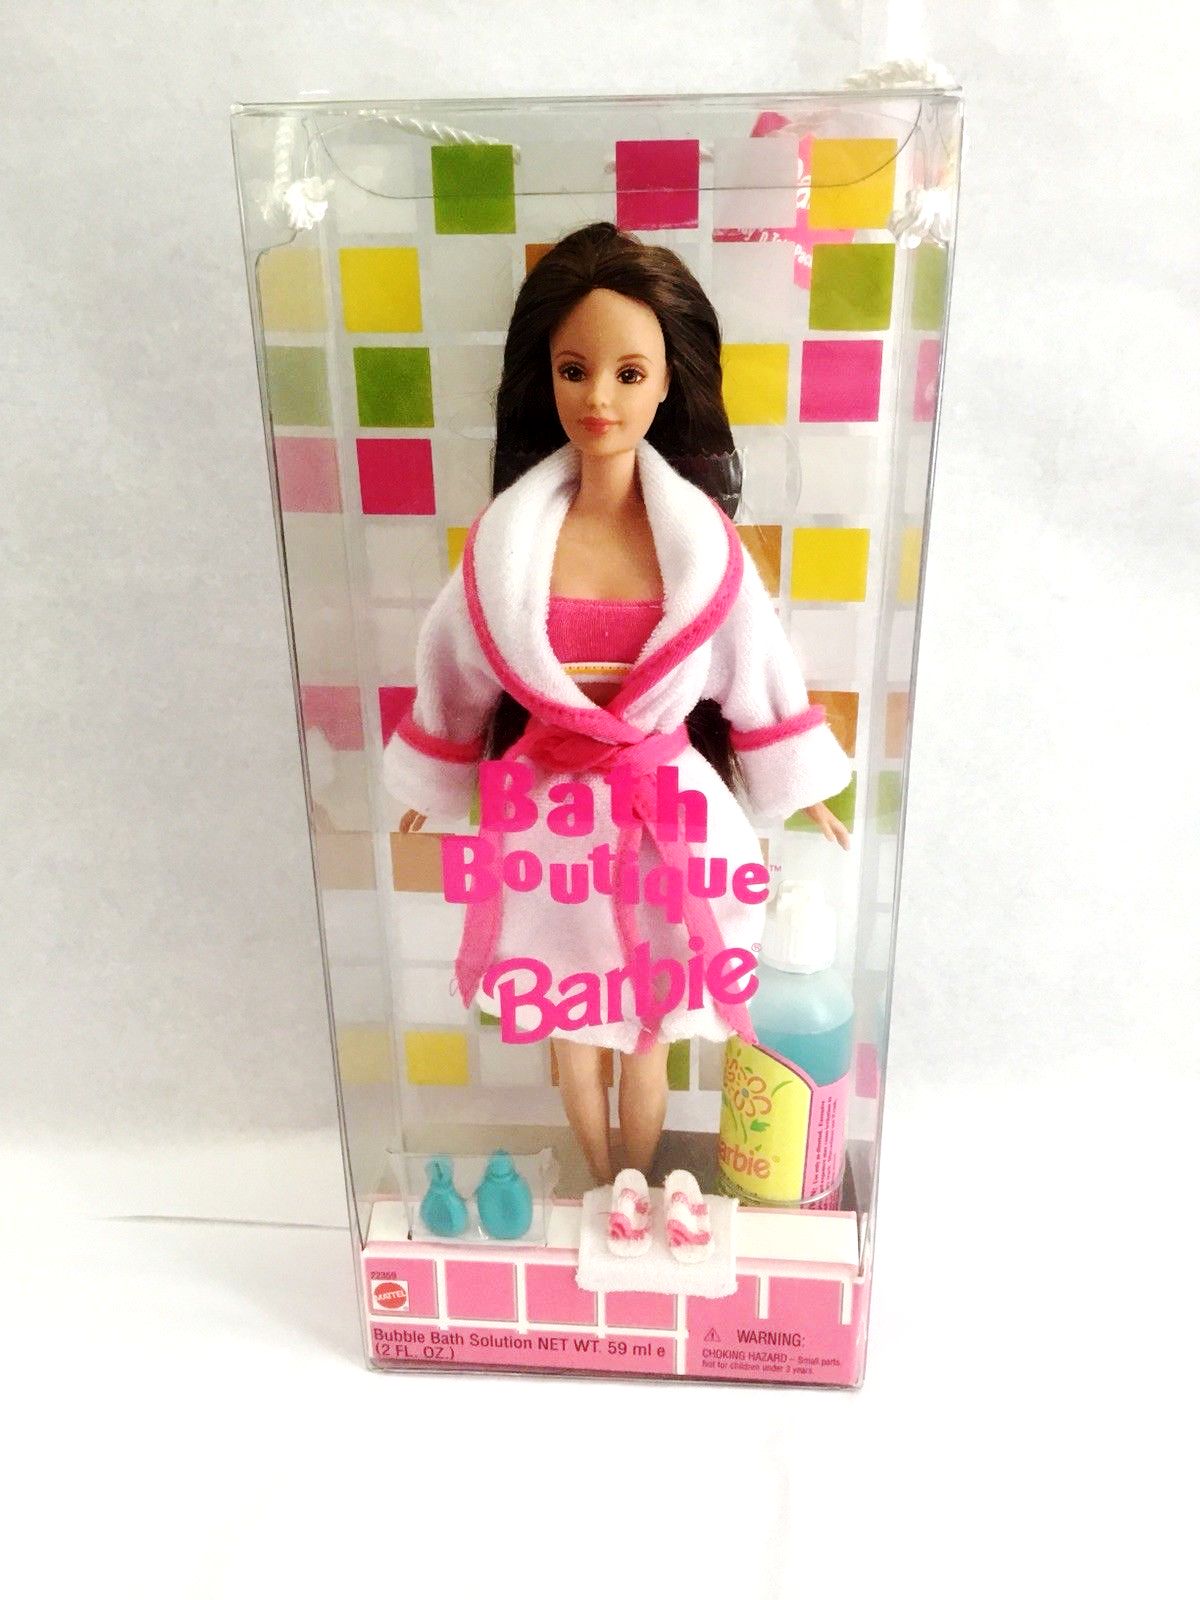 maniac Vijandig Kalmte Bath Boutique Barbie “Brunette” (Mattel Playline Vintage Collection)  “Rare-Vintage” (1998) » Now And Then Collectibles